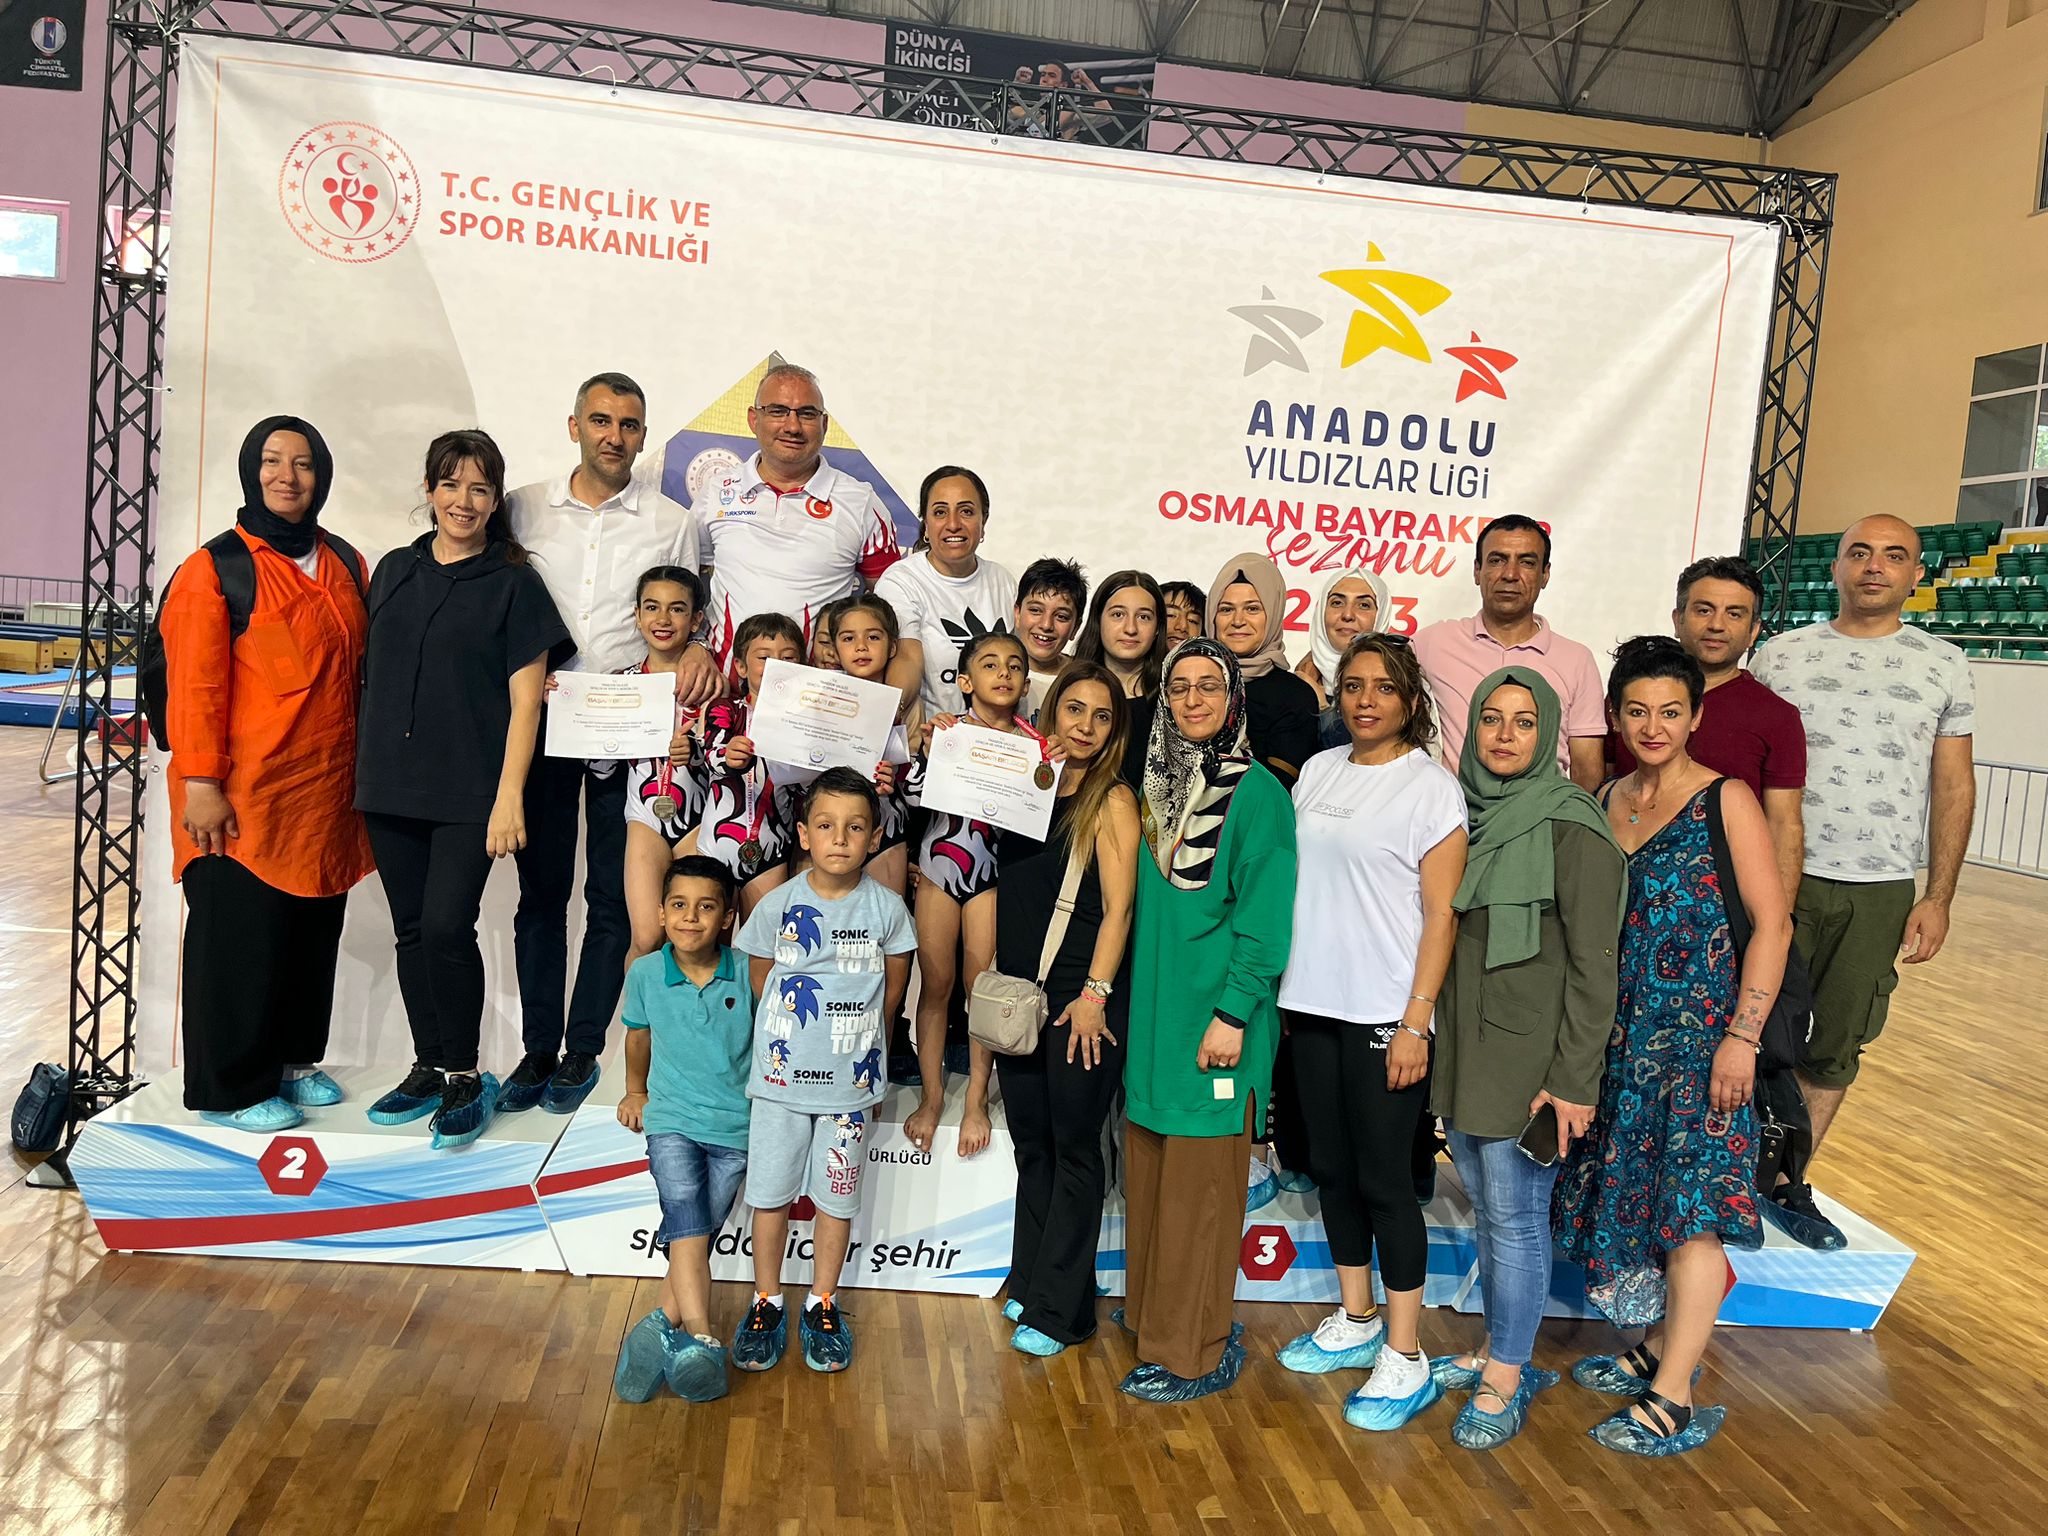 Elazığ Jimnastik spor kulübü ekibi kız ve erkek takımı takım halinde şampiyon oldular.